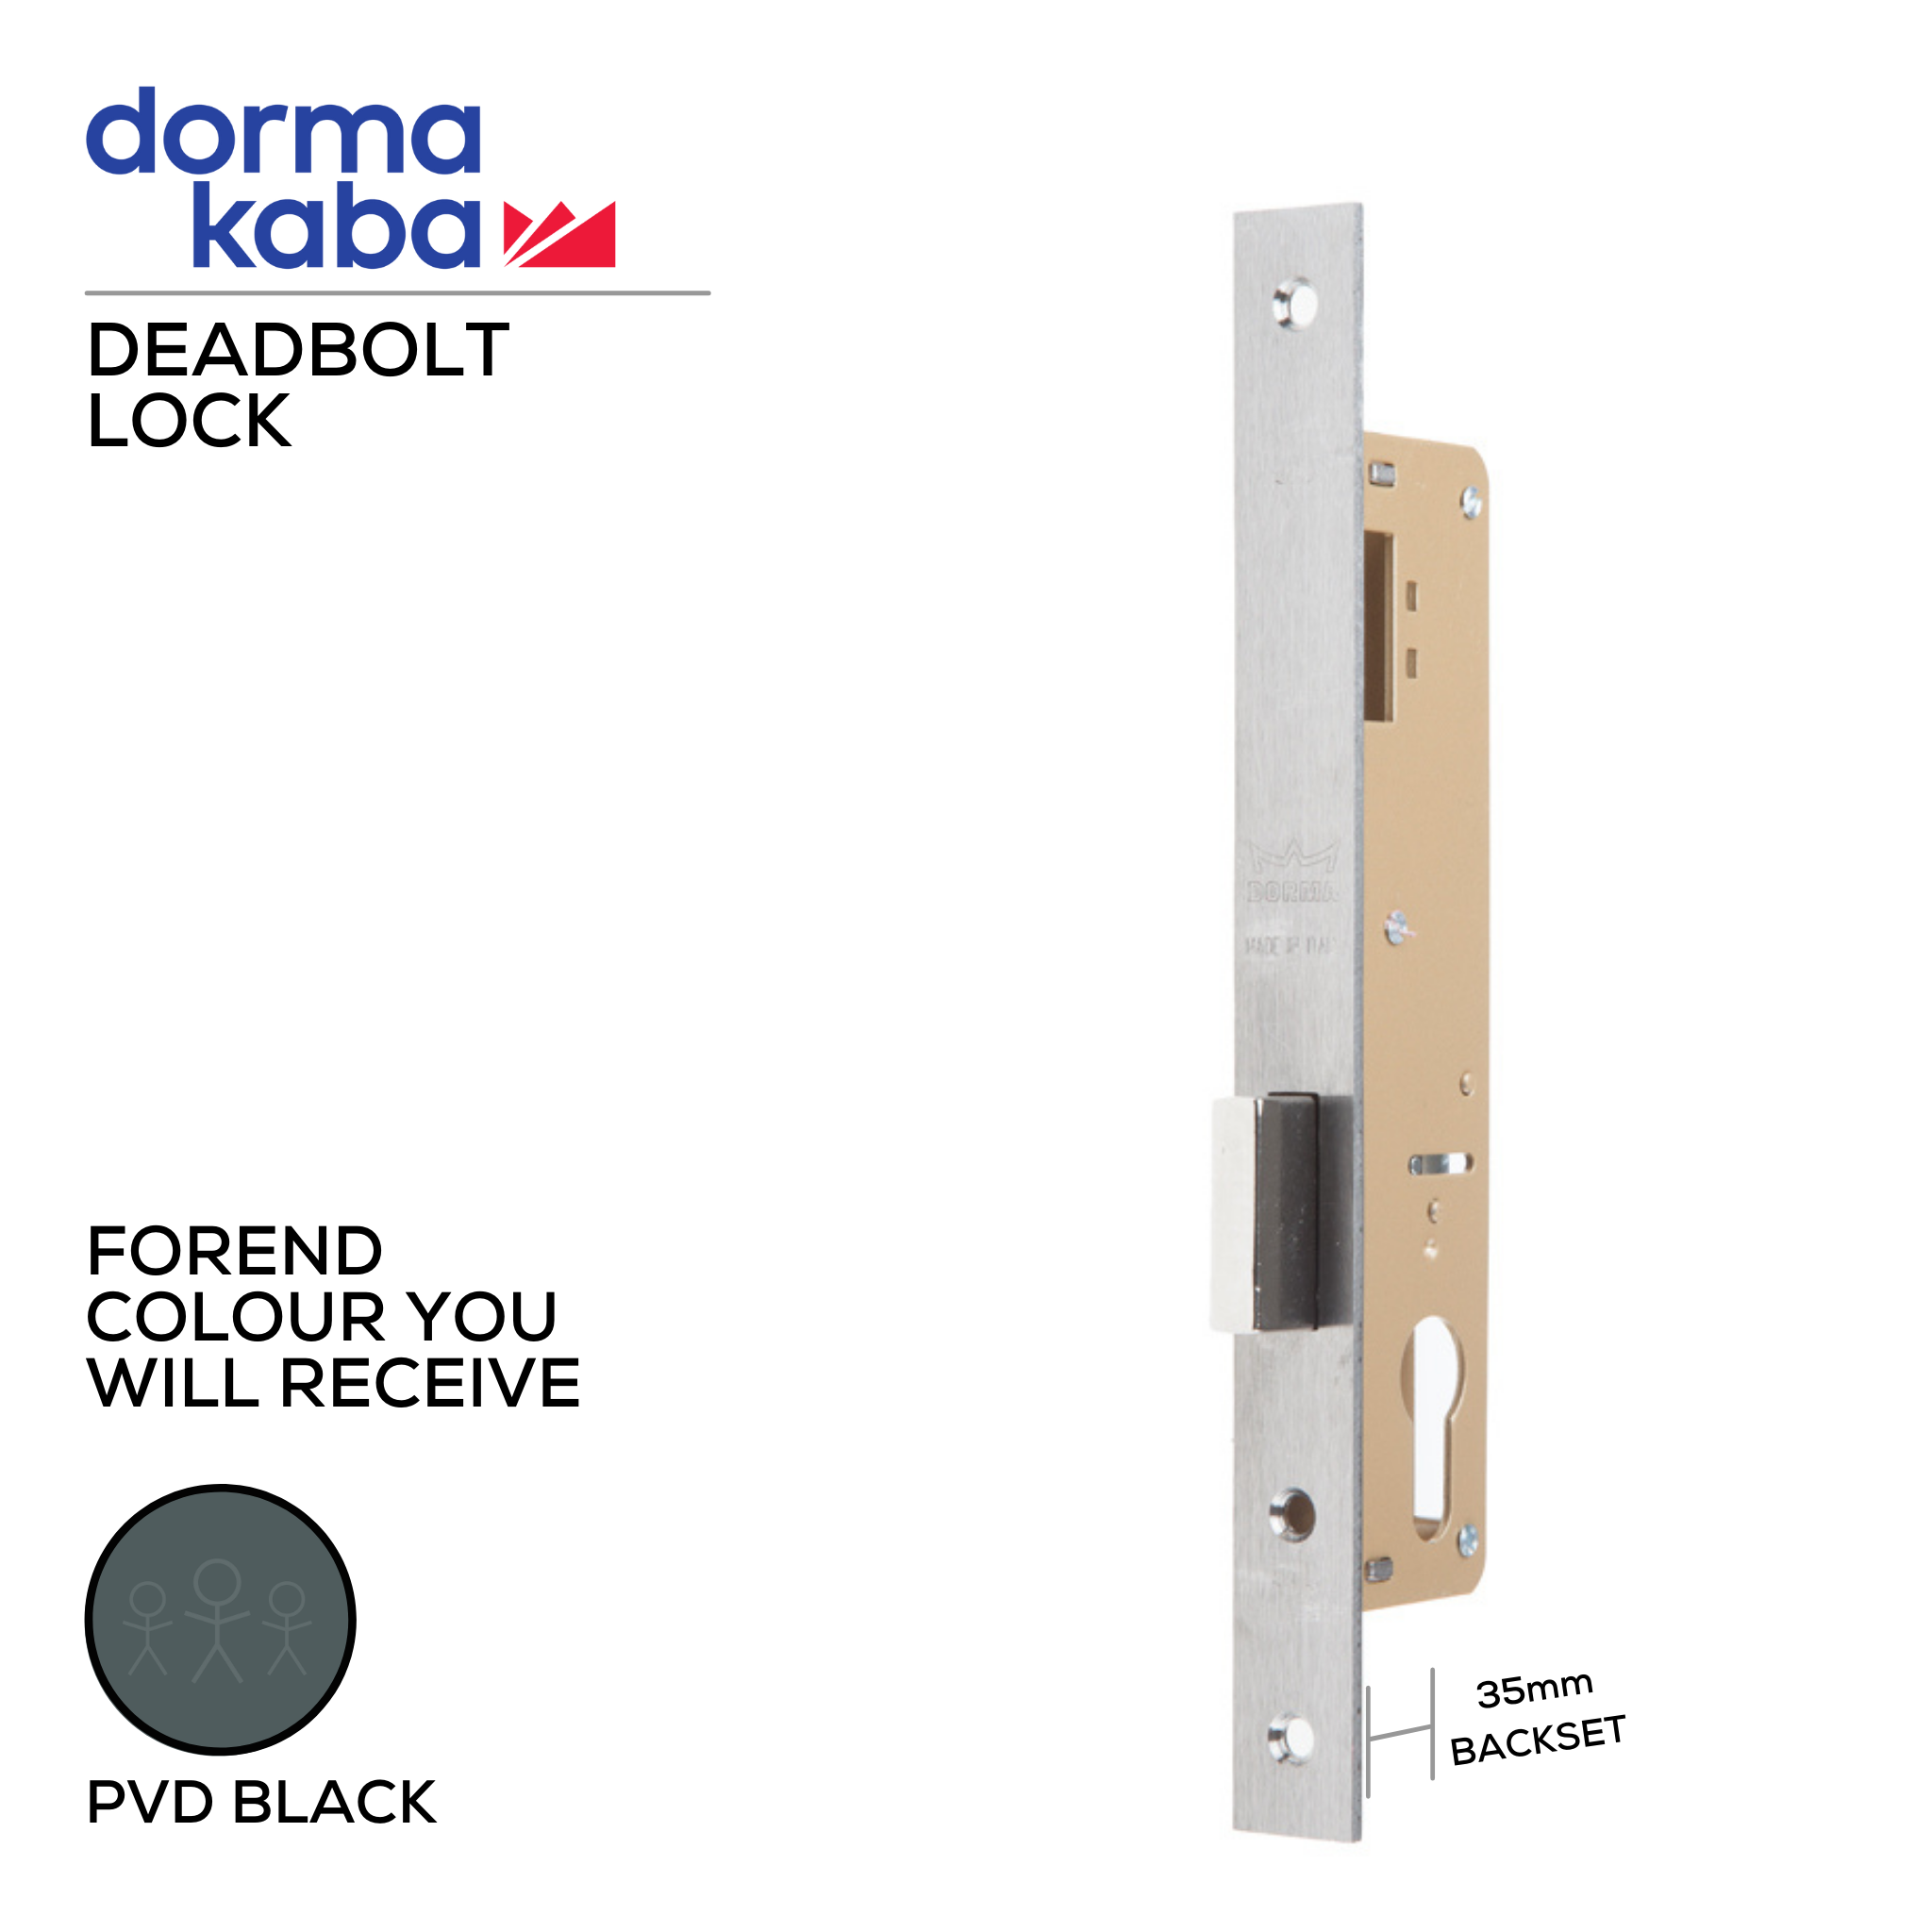 D02735 35mm - BLK, Deadbolt Lock, Euro Cylinder, Excluding Cylinder, 35mm (Backset), PVD Black, DORMAKABA